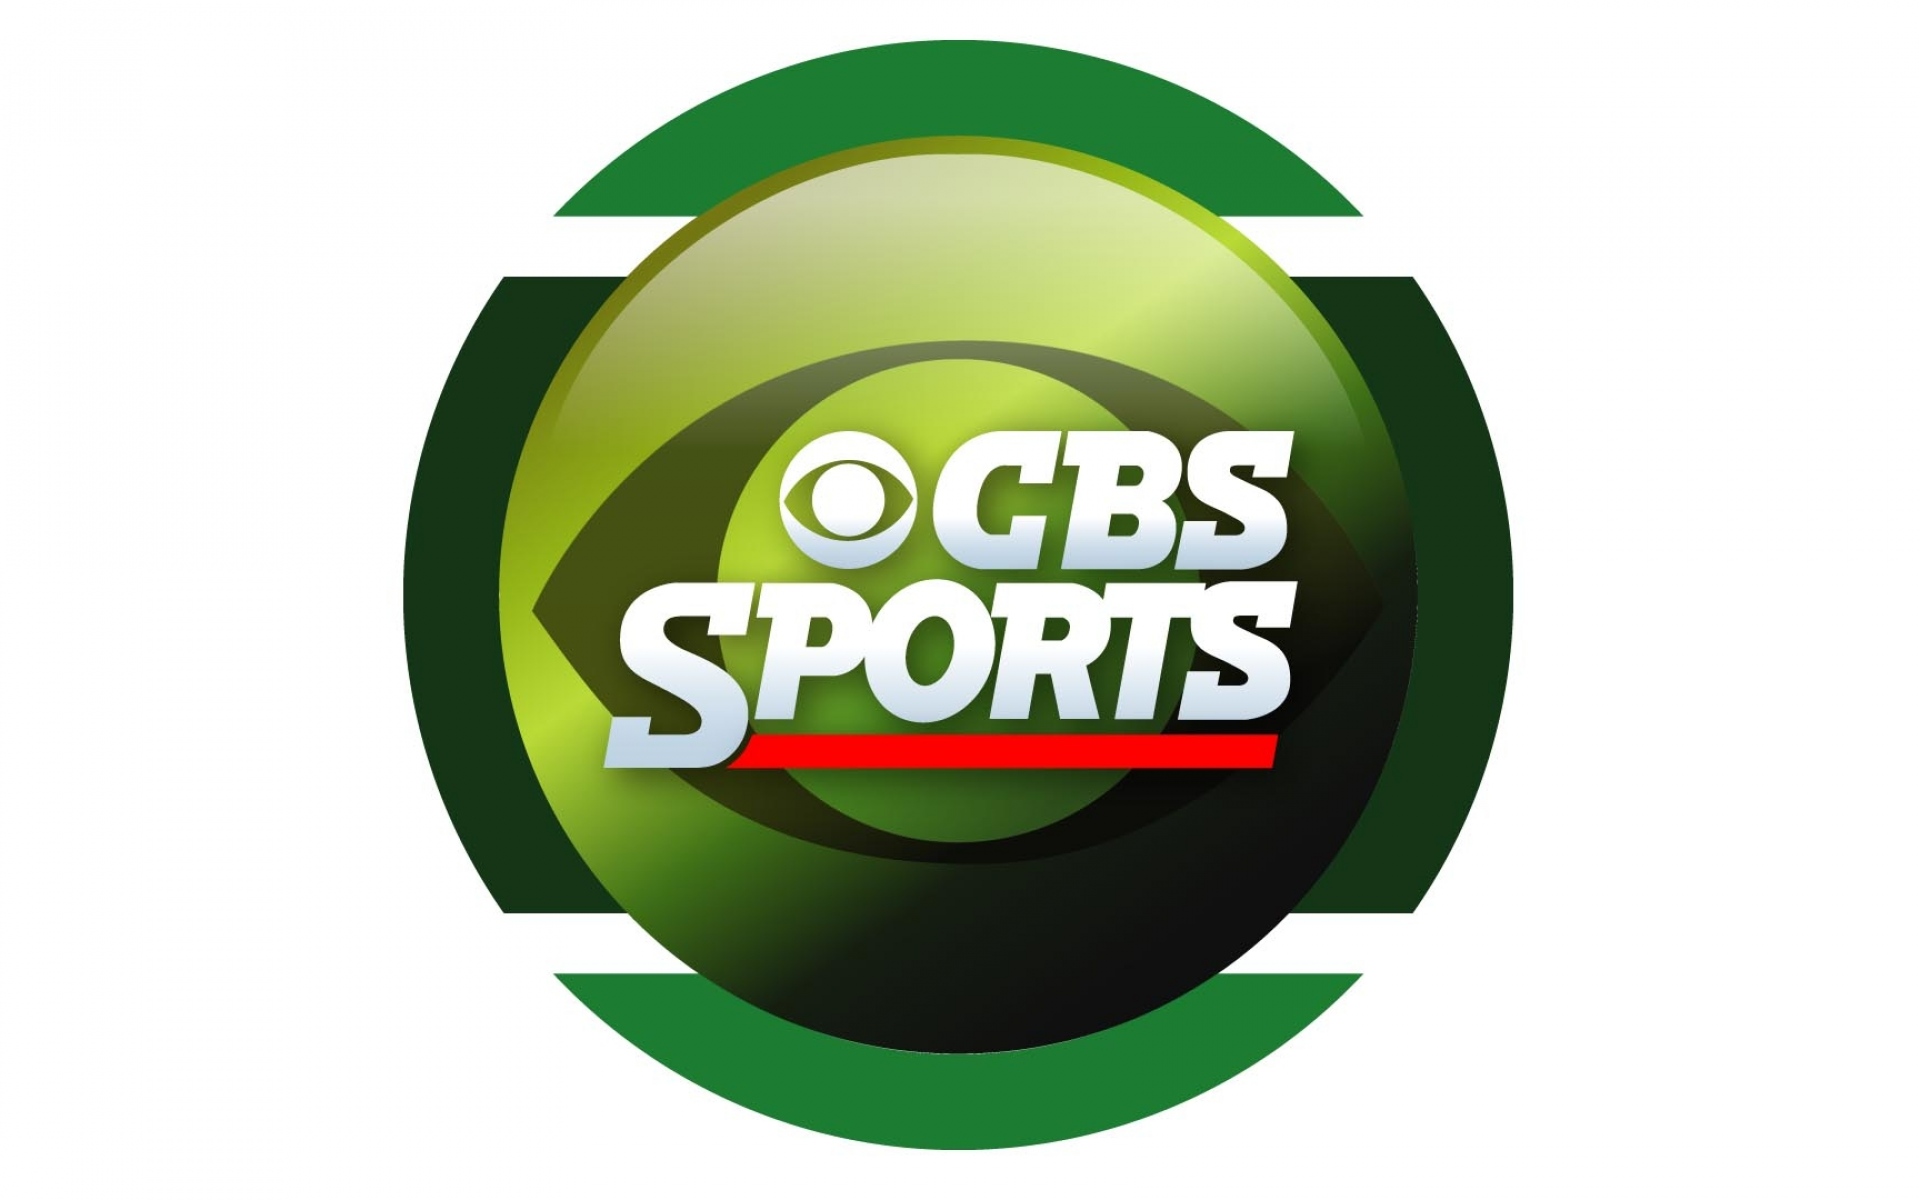 Cbs sport izle. CBS Sports. CBS Sports logo. CBS Sports Network us. CBS Sports ведущая.